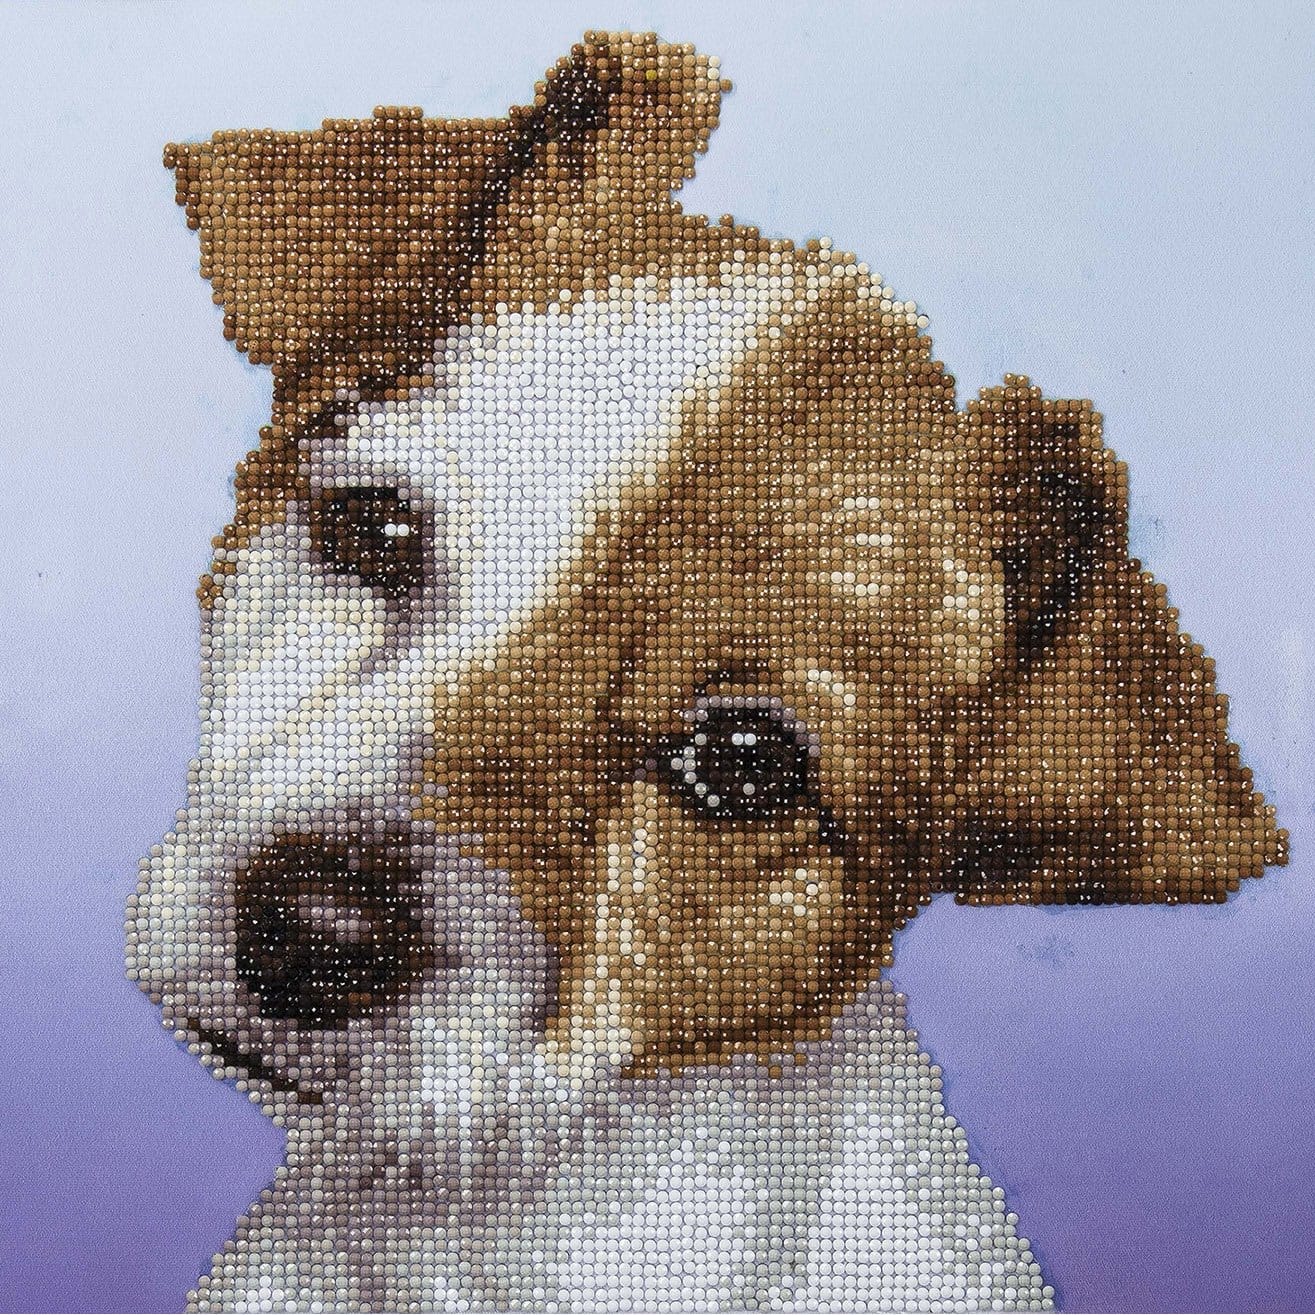 Small Dog - Diamond Paintings 